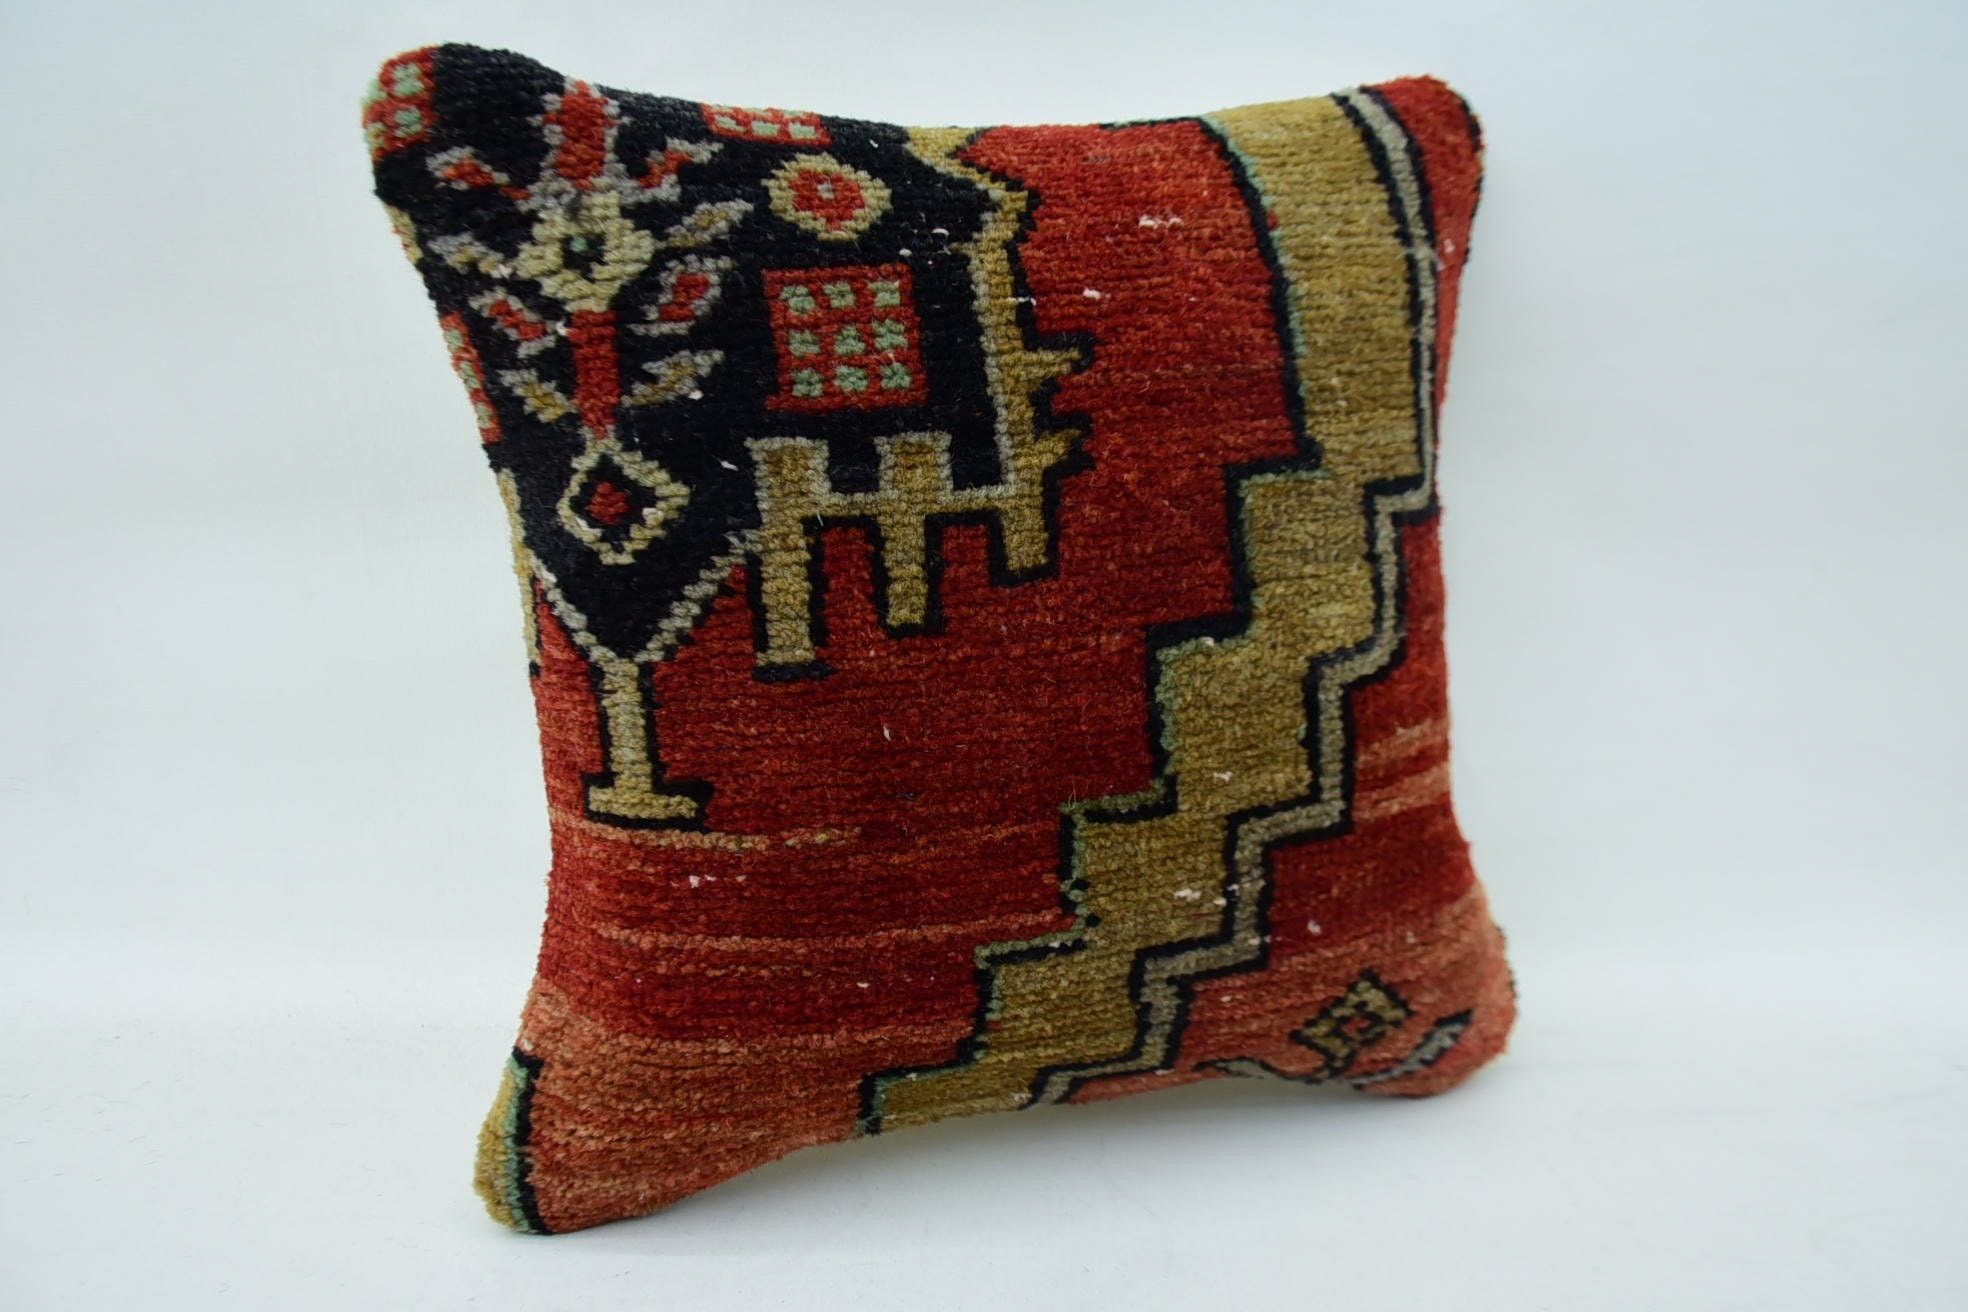 Boho Pillow, 14"x14" Red Cushion, Handmade Kilim Cushion, Antique Pillows, Farmhouse Pillow Cover, Bohemian Cushion Cushion Cover